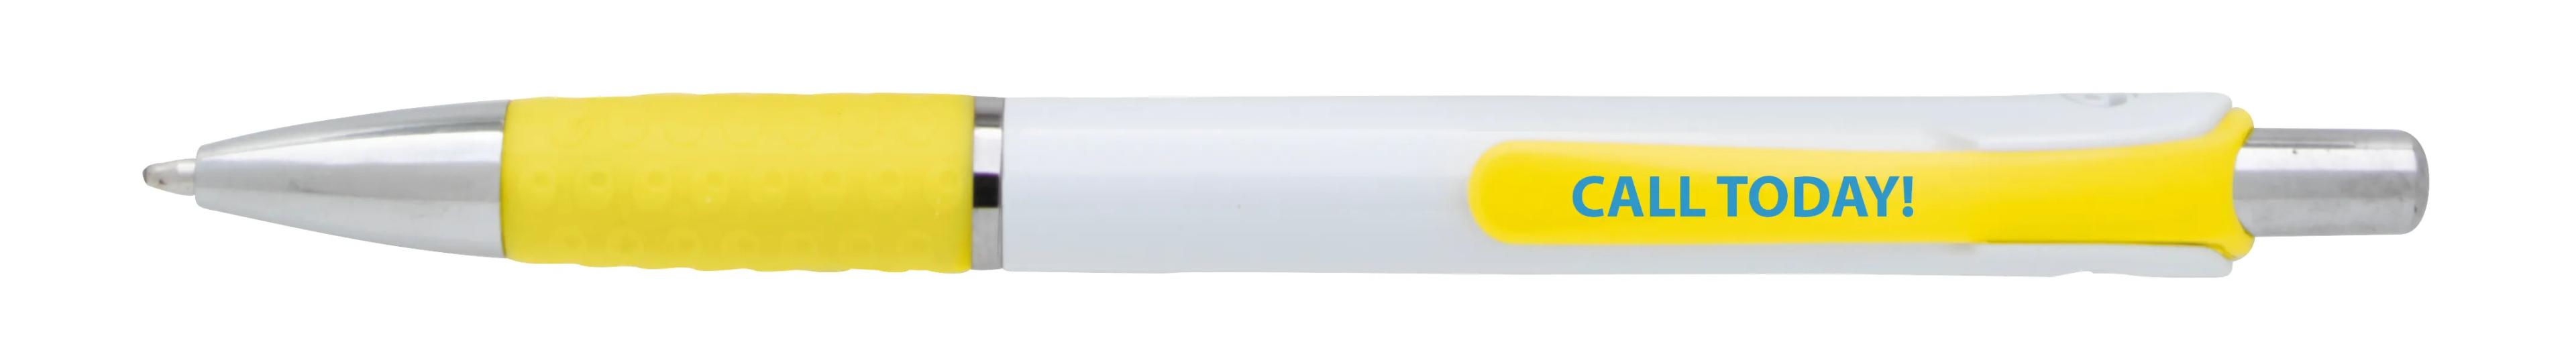 Souvenir® Image Grip Pen 5 of 50